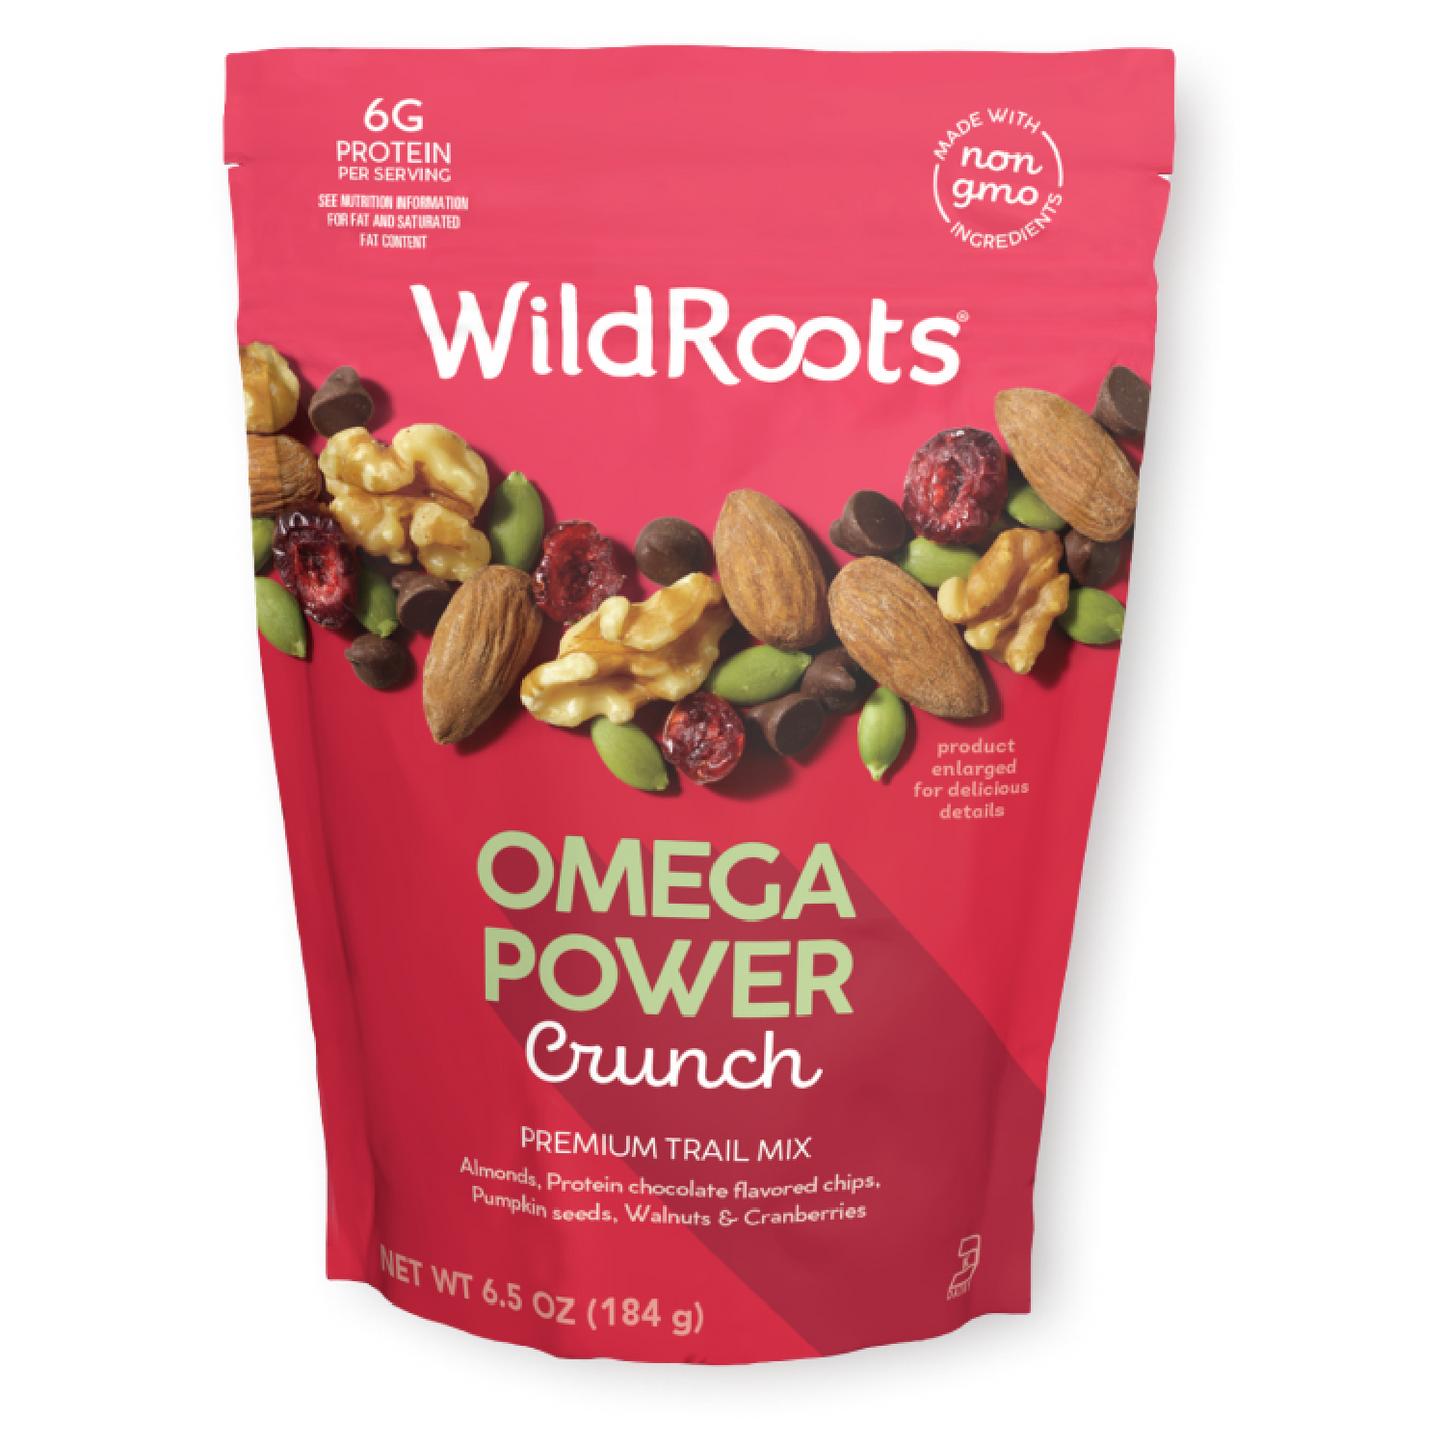 Omega Power Crunch